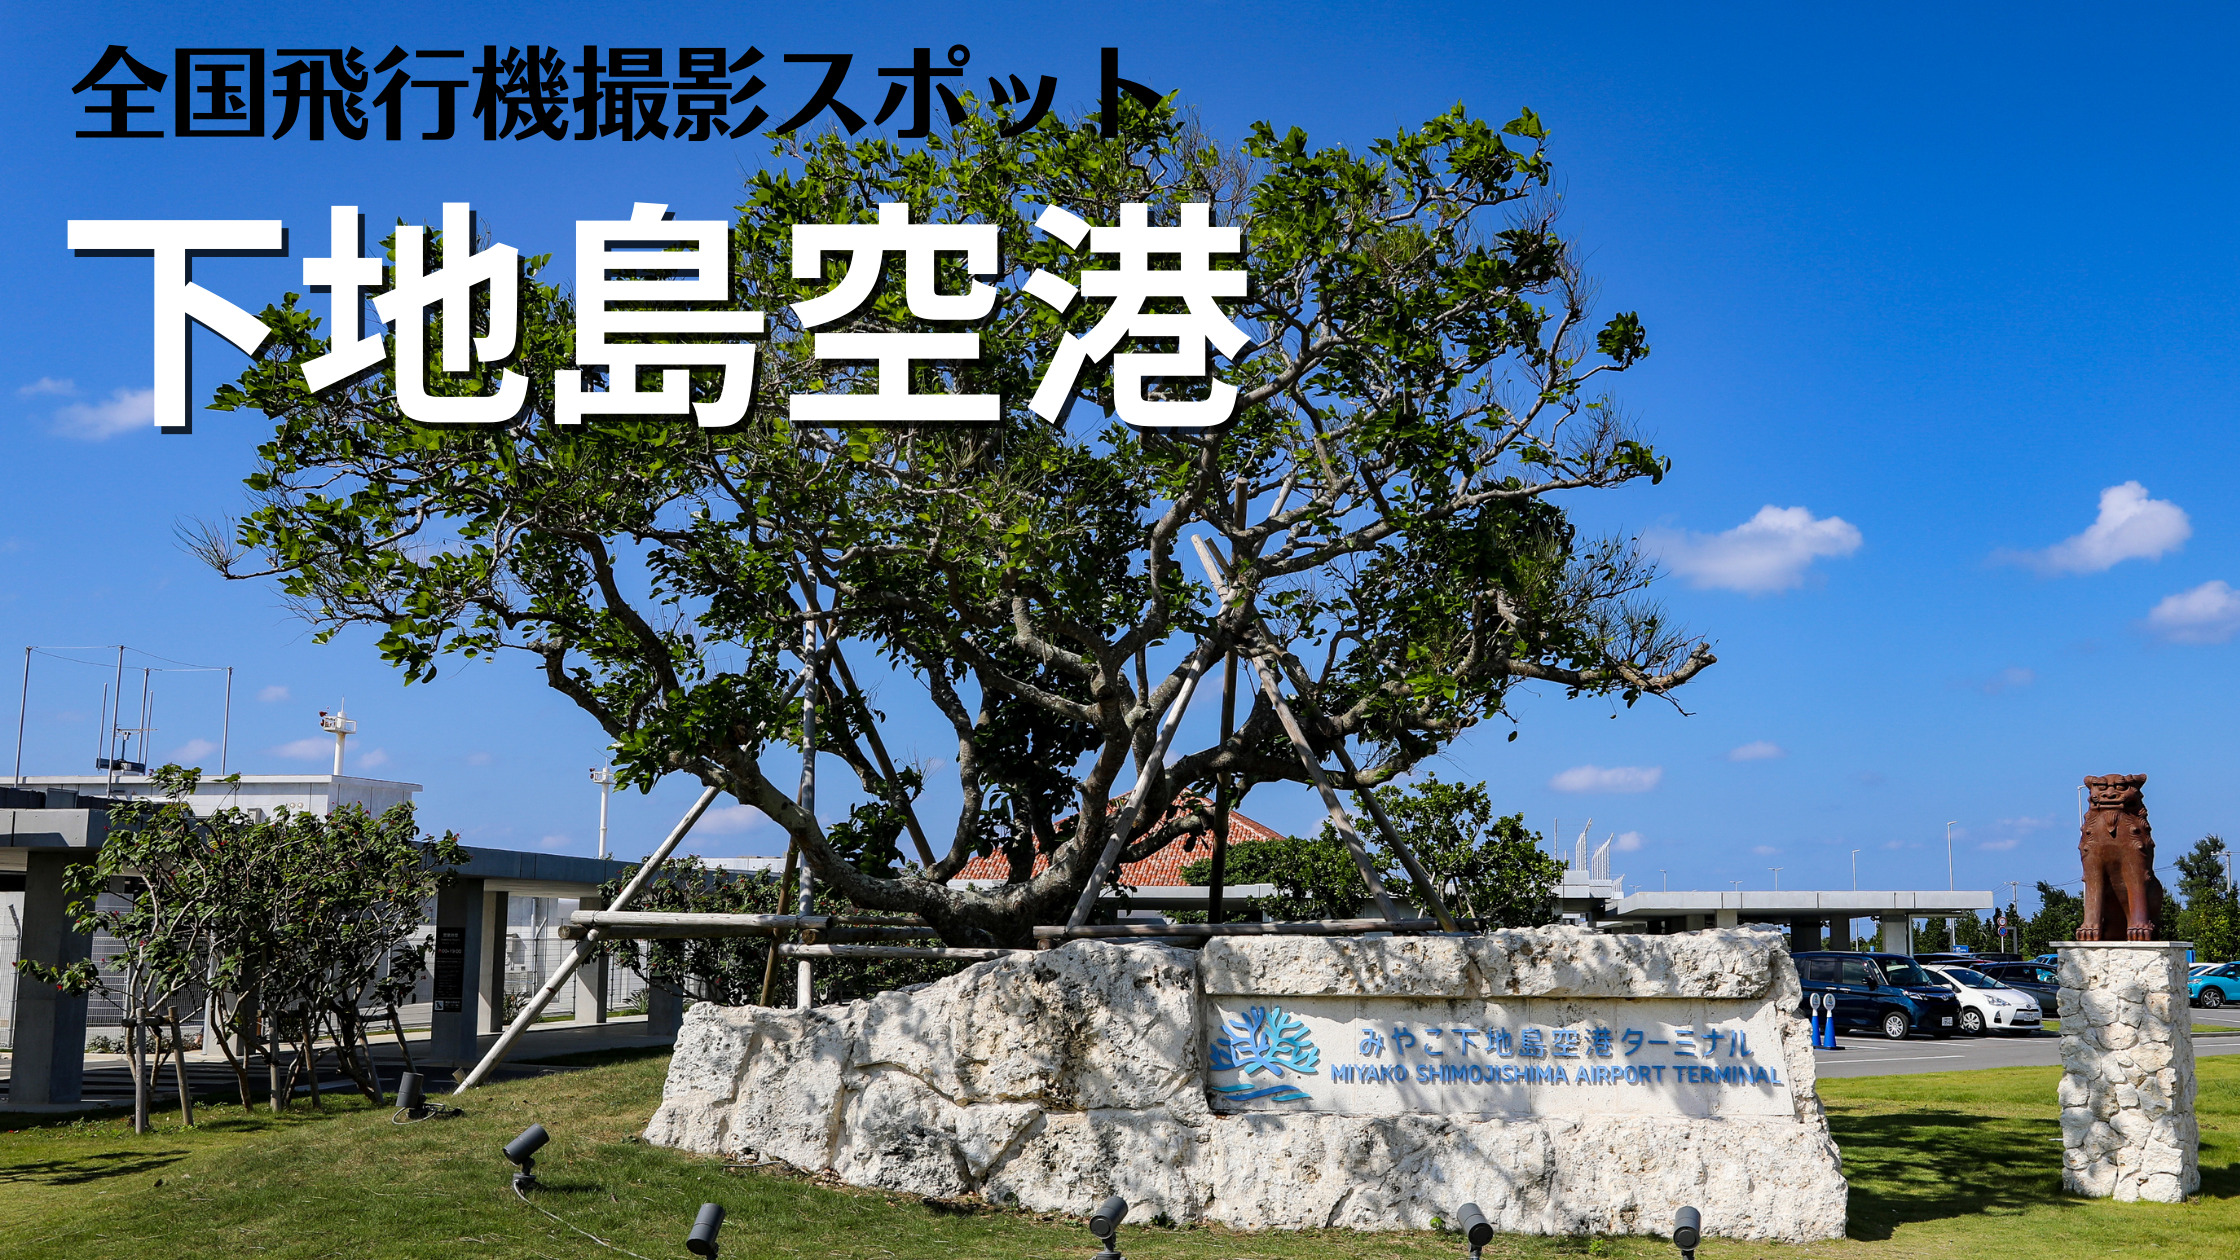 沖縄 みやこ下地島空港 Shi Rors 飛行機写真撮影スポット情報 シテイリョウコウ